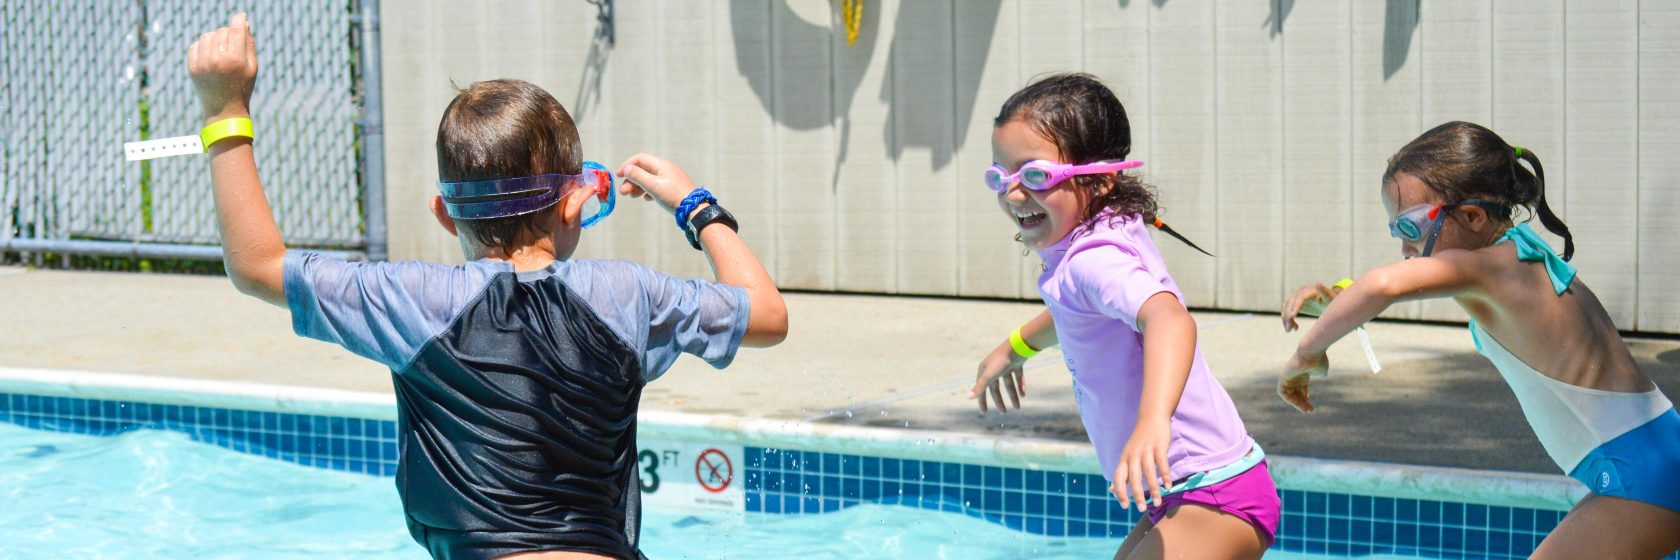 Students having fun in the pool.